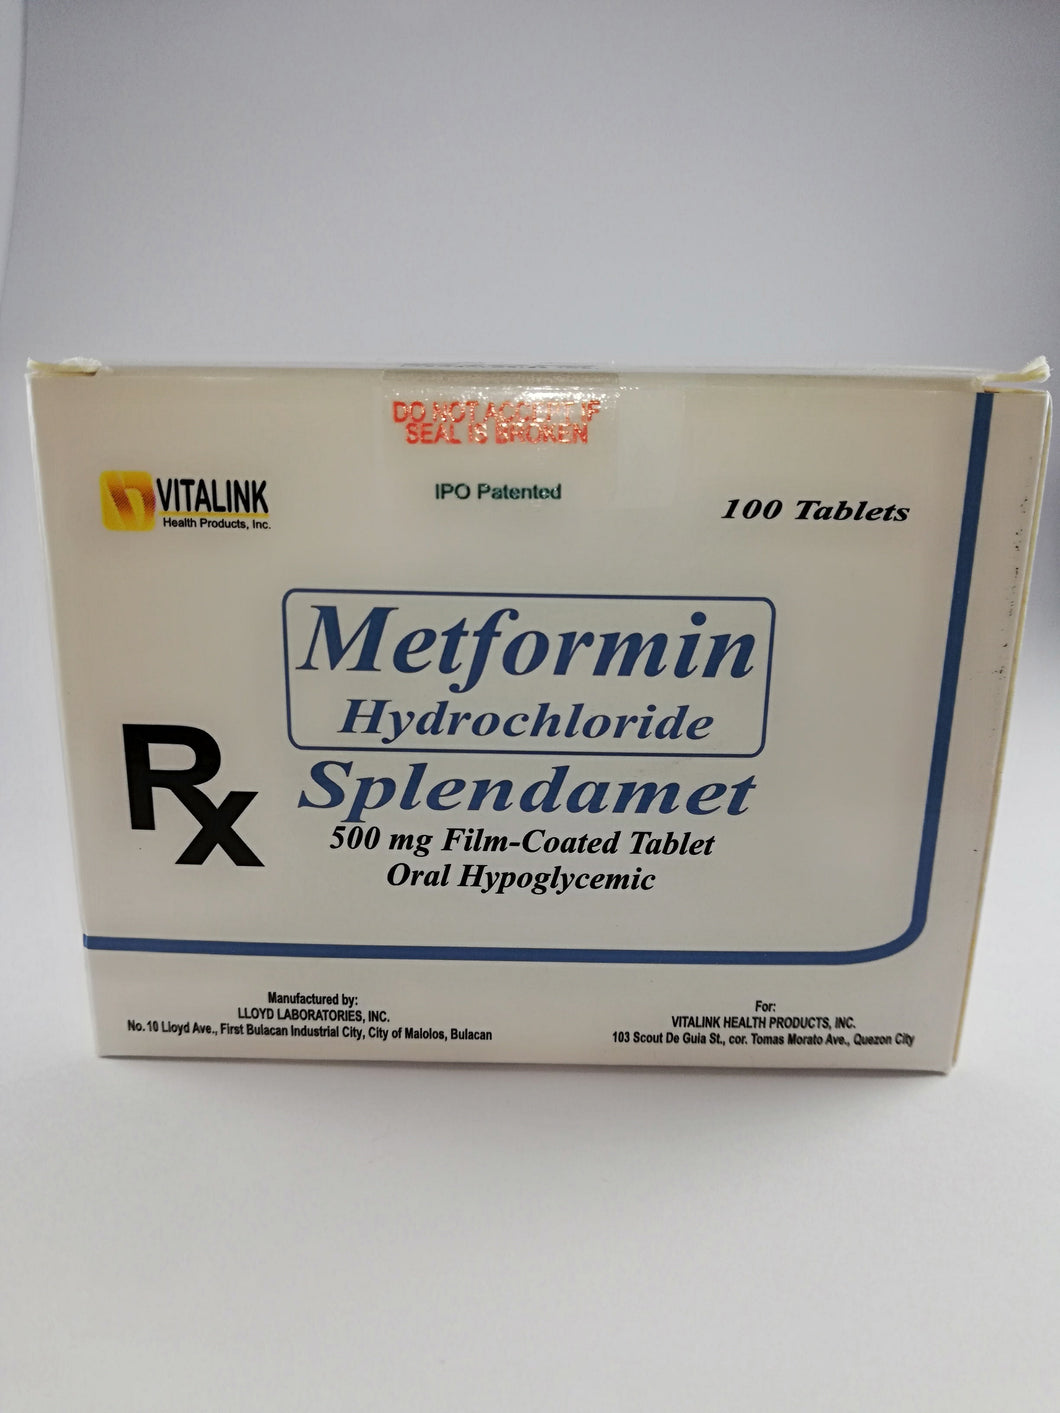 Splendamet (Metformin Hydrochloride)